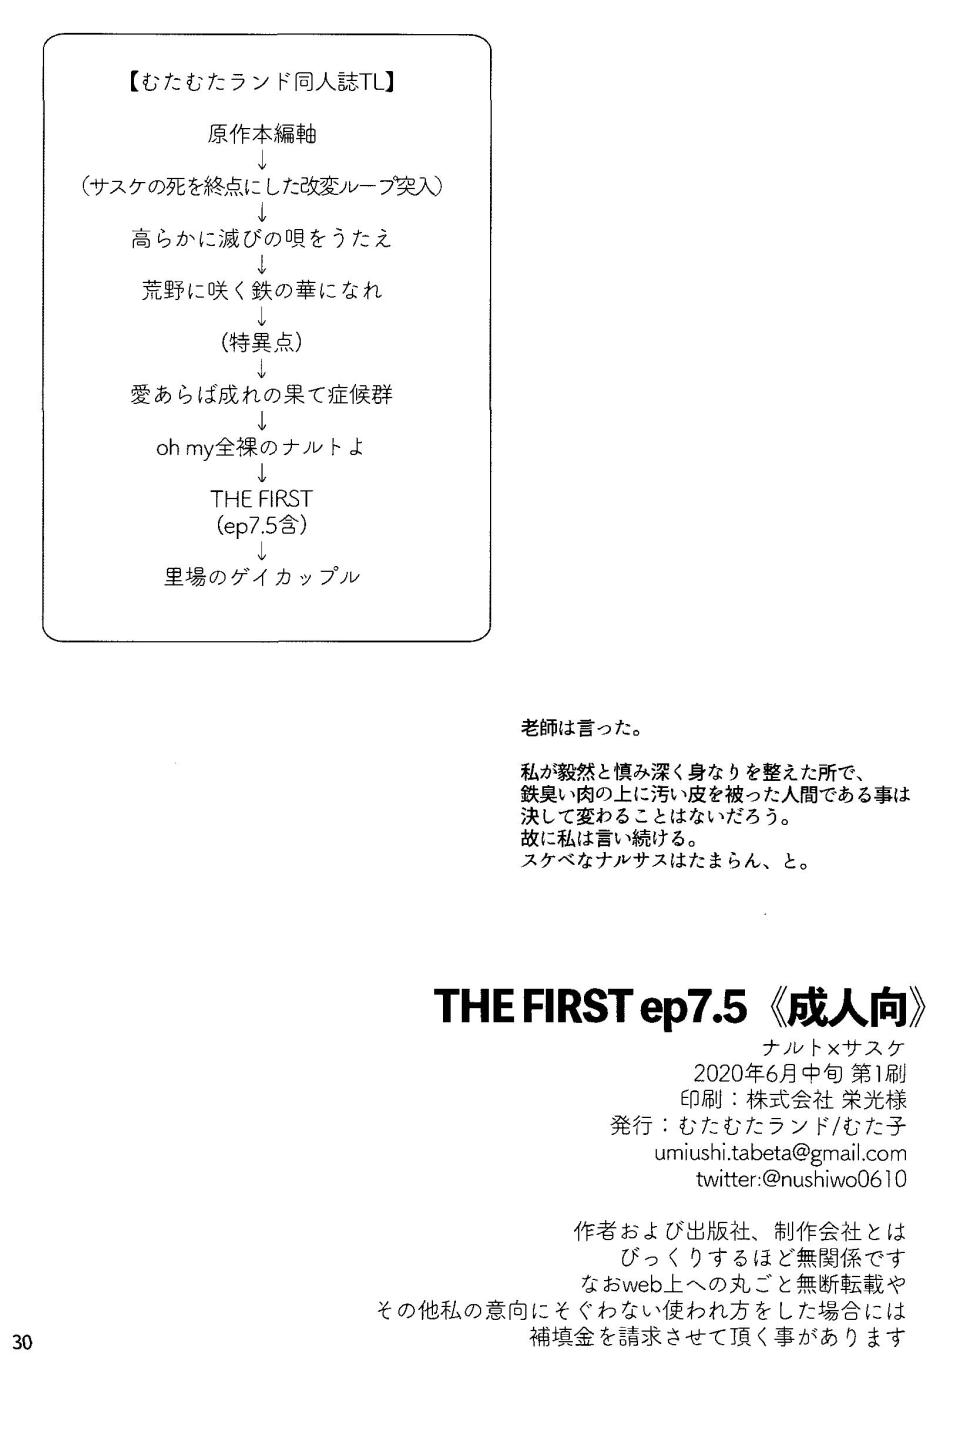 [Mutamuta Land (Mutako)] THE FIRST ep 7.5 (Naruto) - Page 32